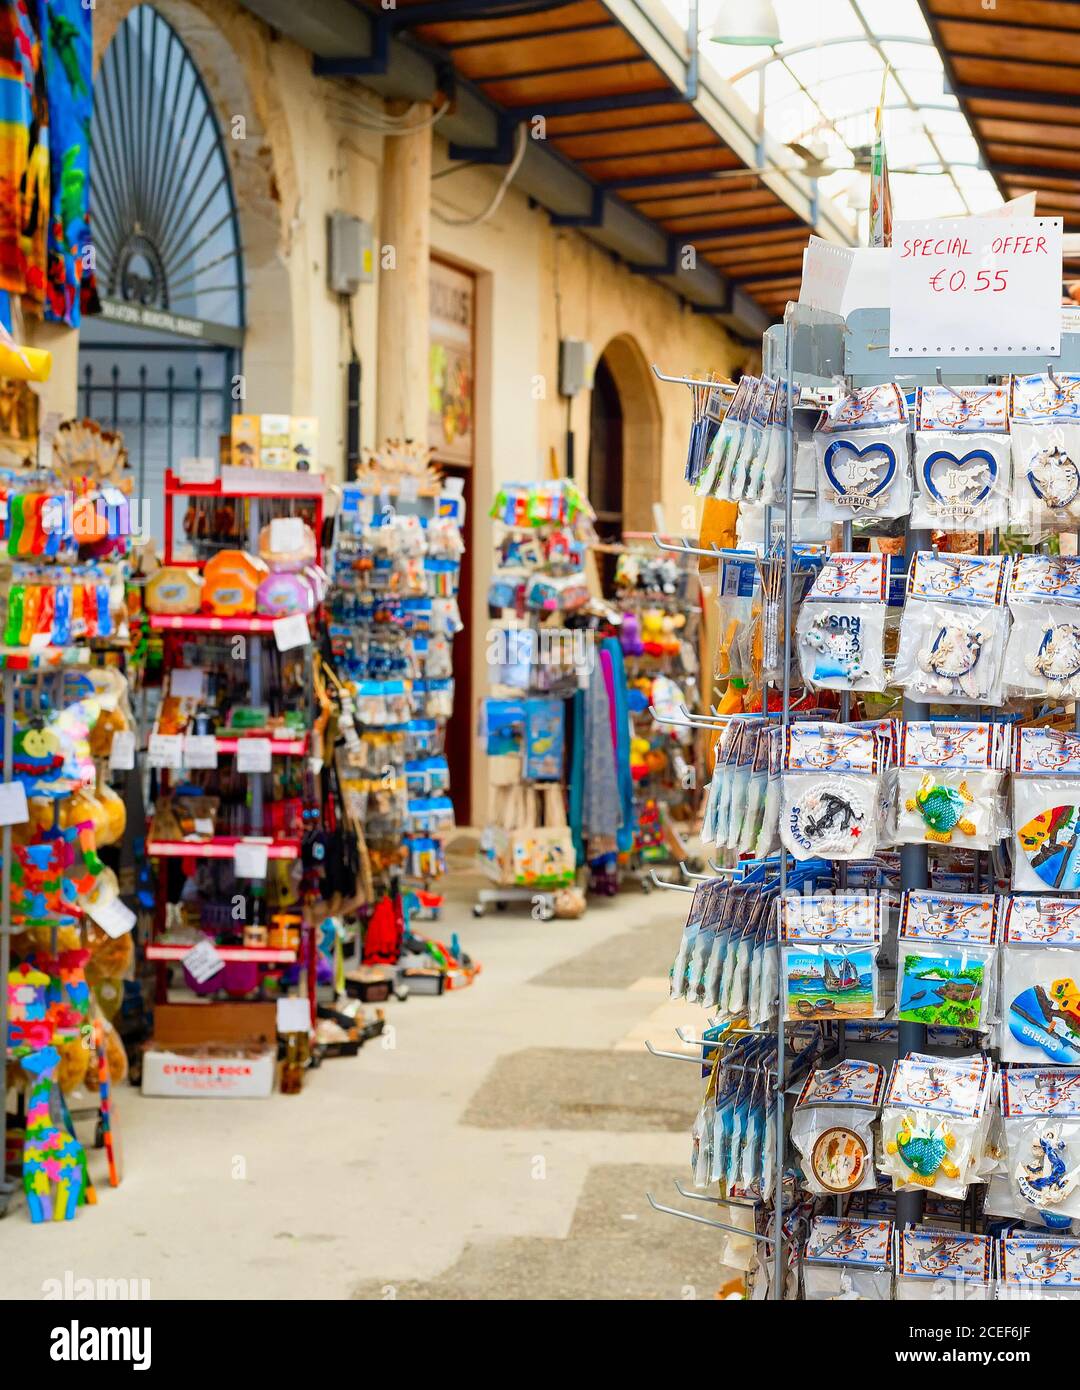 LARNACA, ZYPERN - 16. FEBRUAR 2019: Bunte Geschenkmagnete, Küchentücher auf Ständen am Souvenirmarkt im touristischen Zentrum von Larnaca Stockfoto